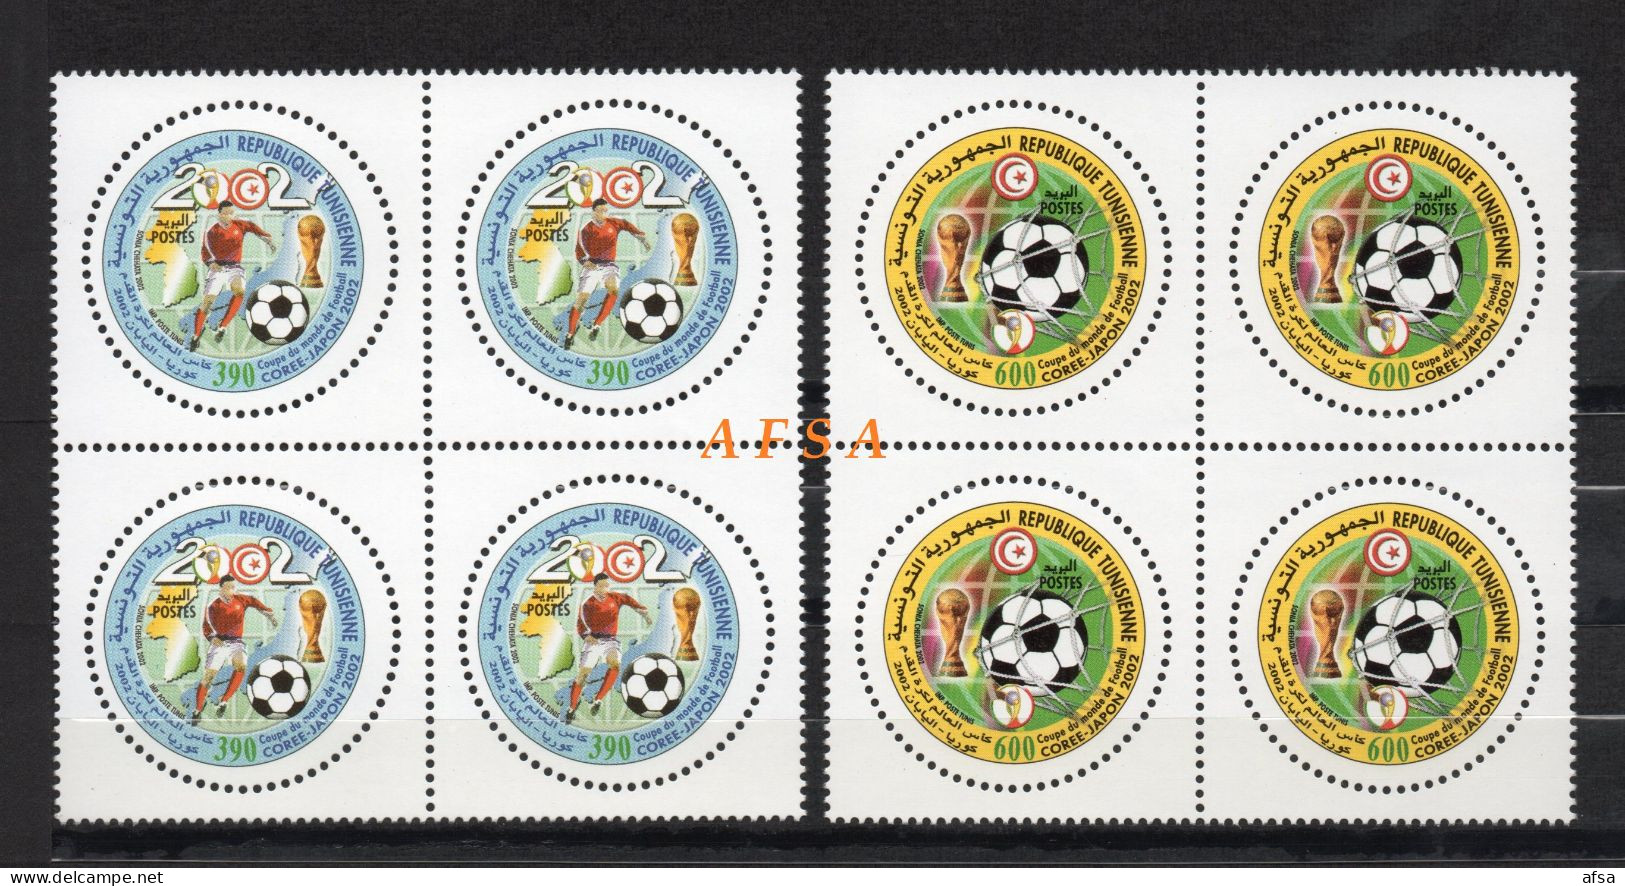 Football World Cup Korea-Japon 2002( Block 4) // Coupe Du Monde De Foot-Ball Corée-Japon 2002 (bloc De 4) - 2002 – Corea Del Sur / Japón